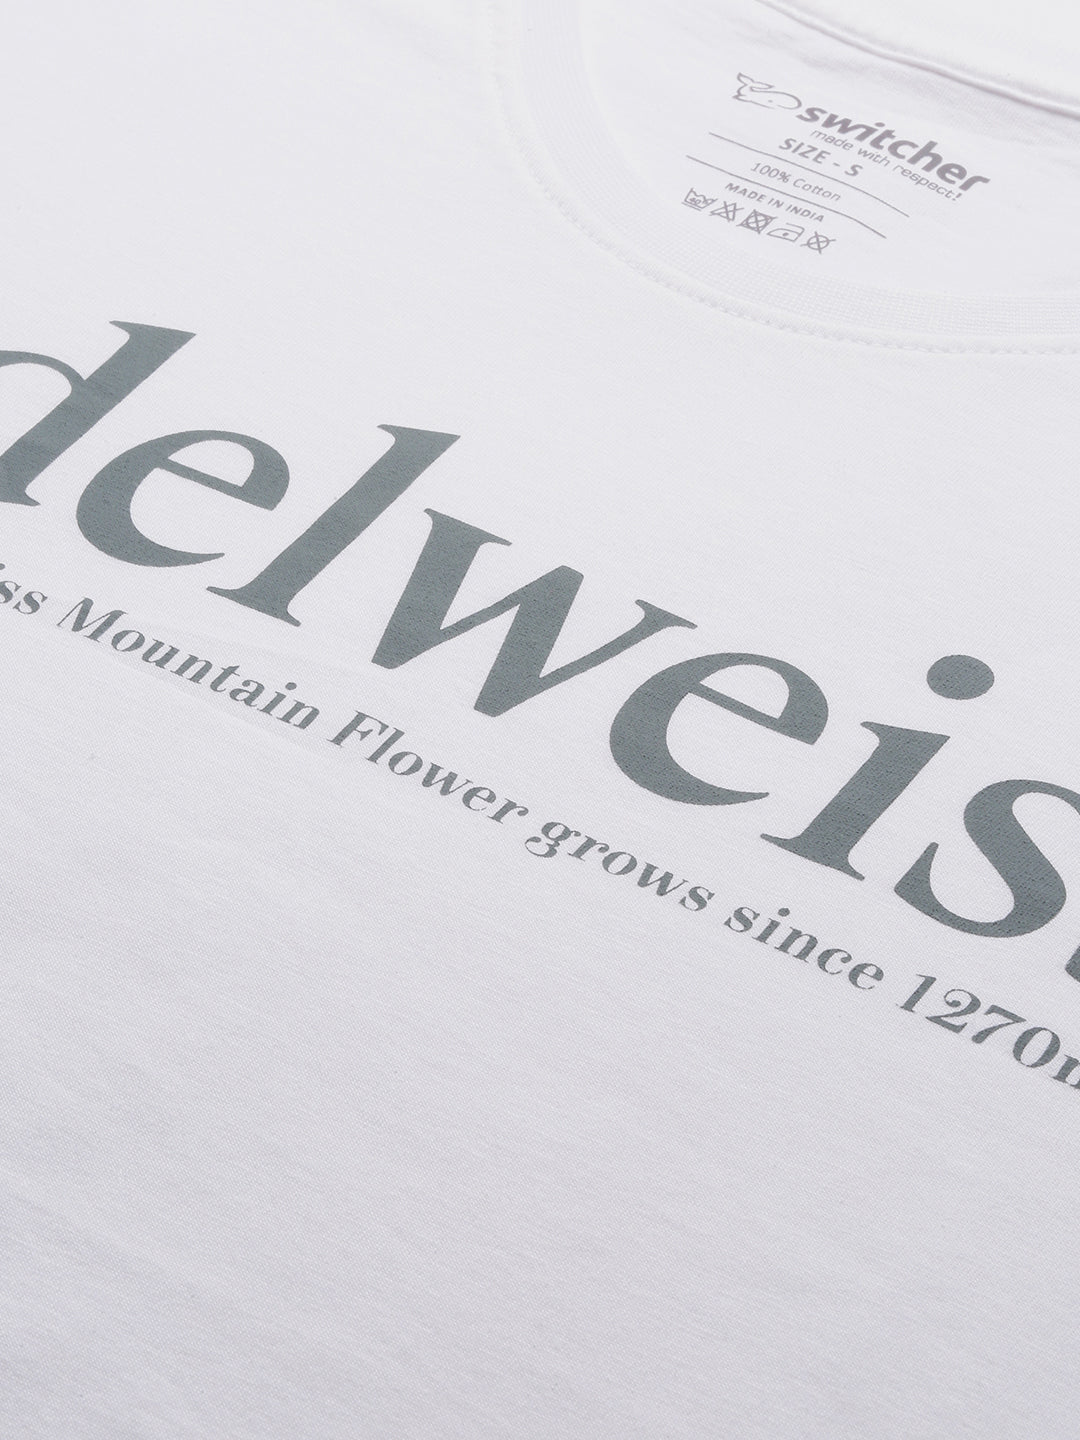 Edelweiss T-Shirt Femme - 2085